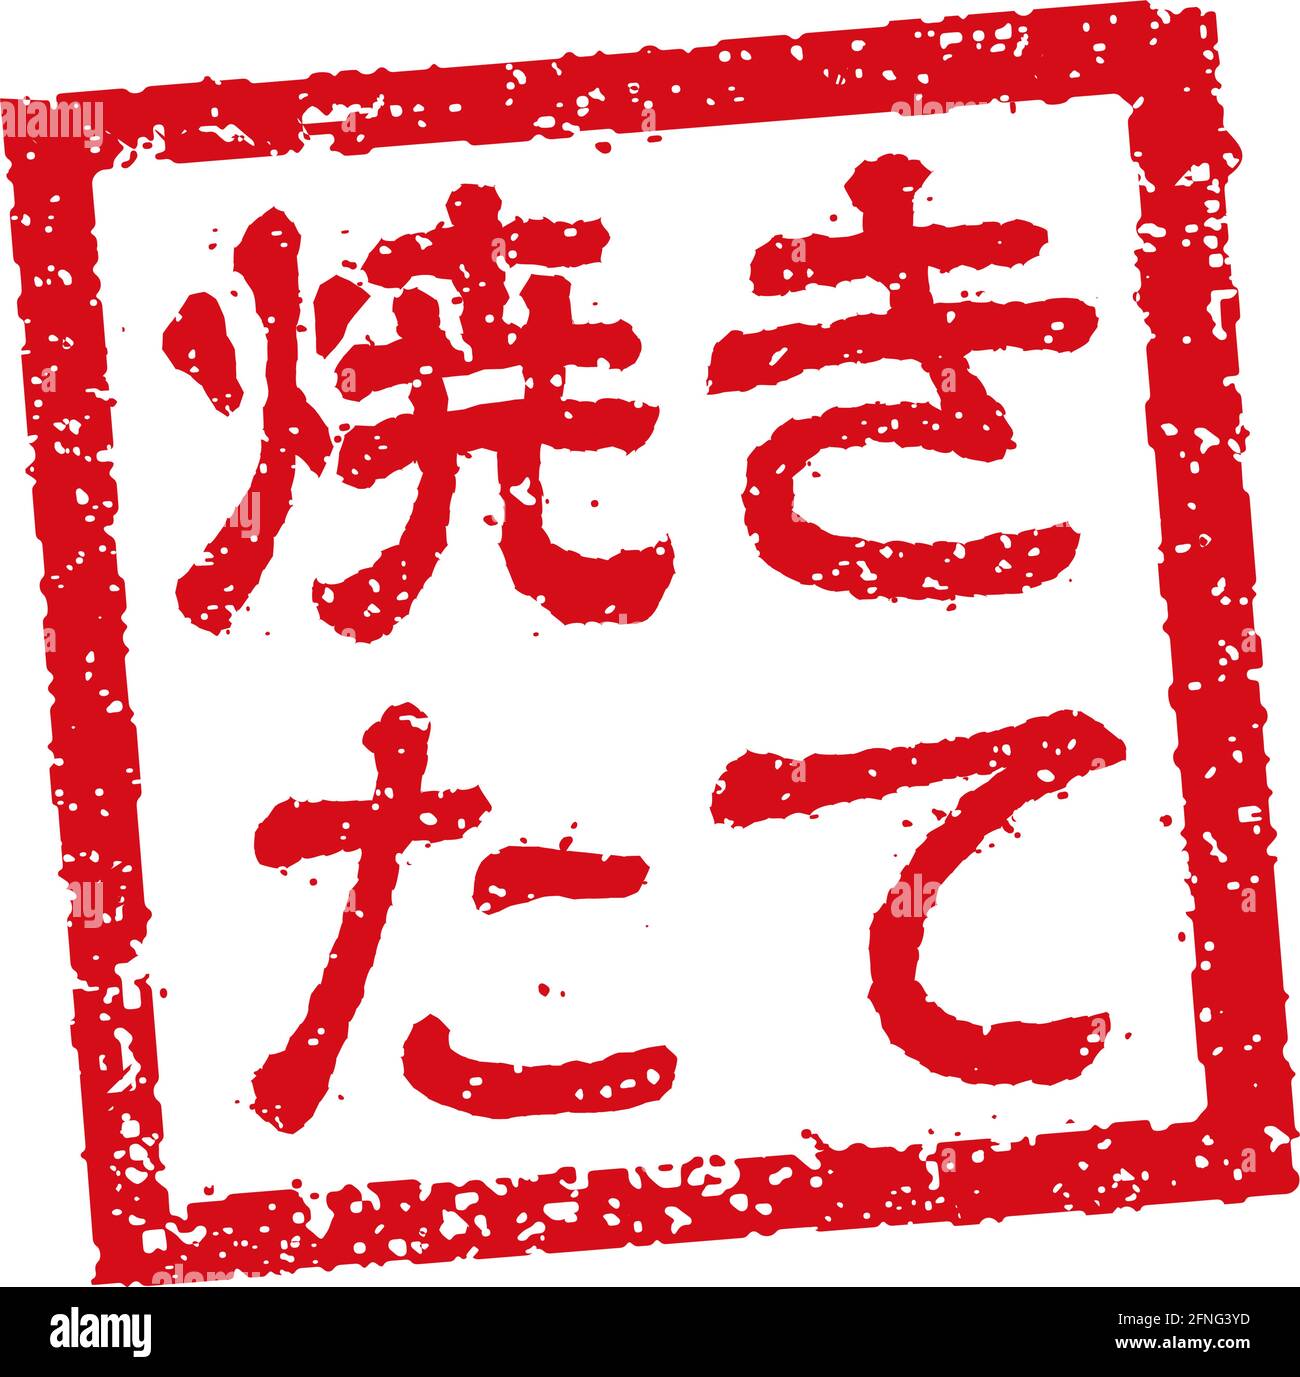 Abbildung mit Gummistempeln, die oft in japanischen Restaurants und Pubs verwendet wird Frisch Stock Vektor